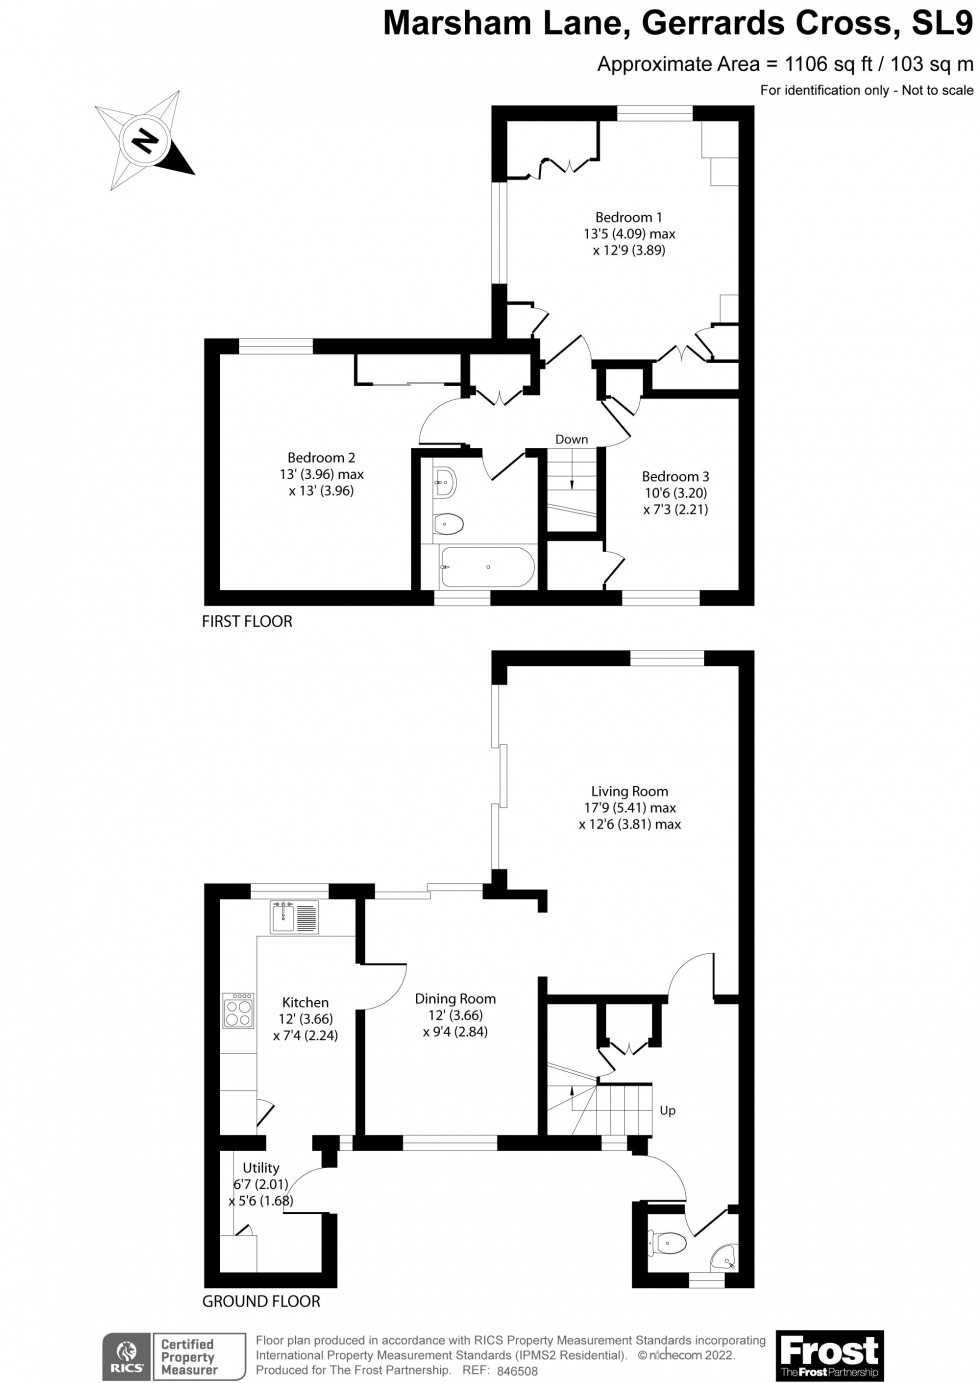 Floorplan for Marsham Lane, Gerrards Cross, SL9